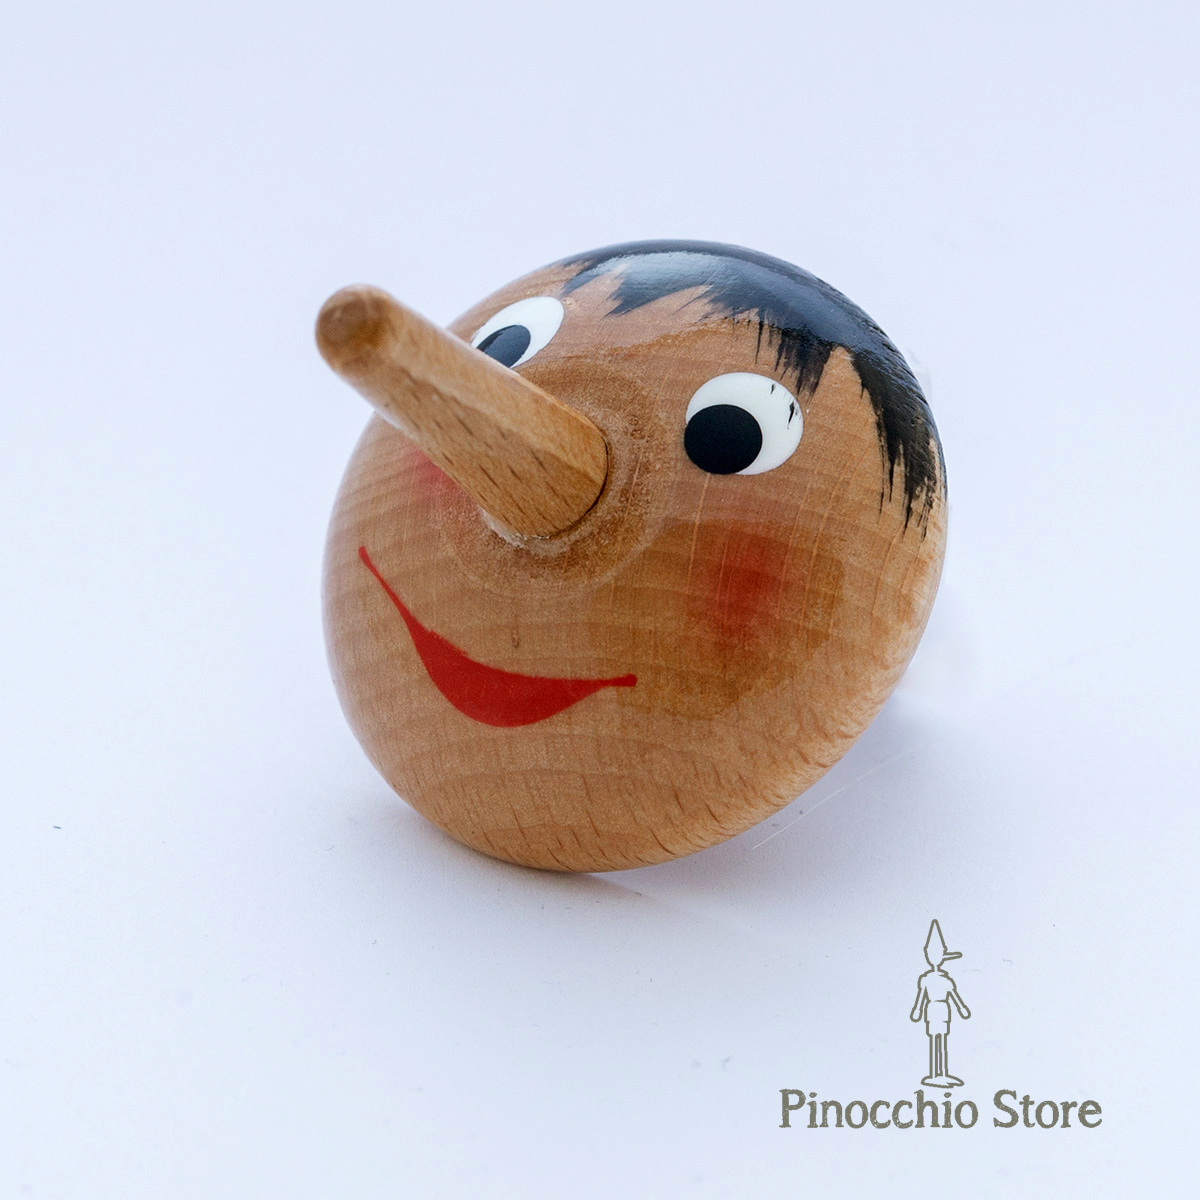 Calamite Piccole Pinocchio - Realizzate in legno naturale e dipinte a mano